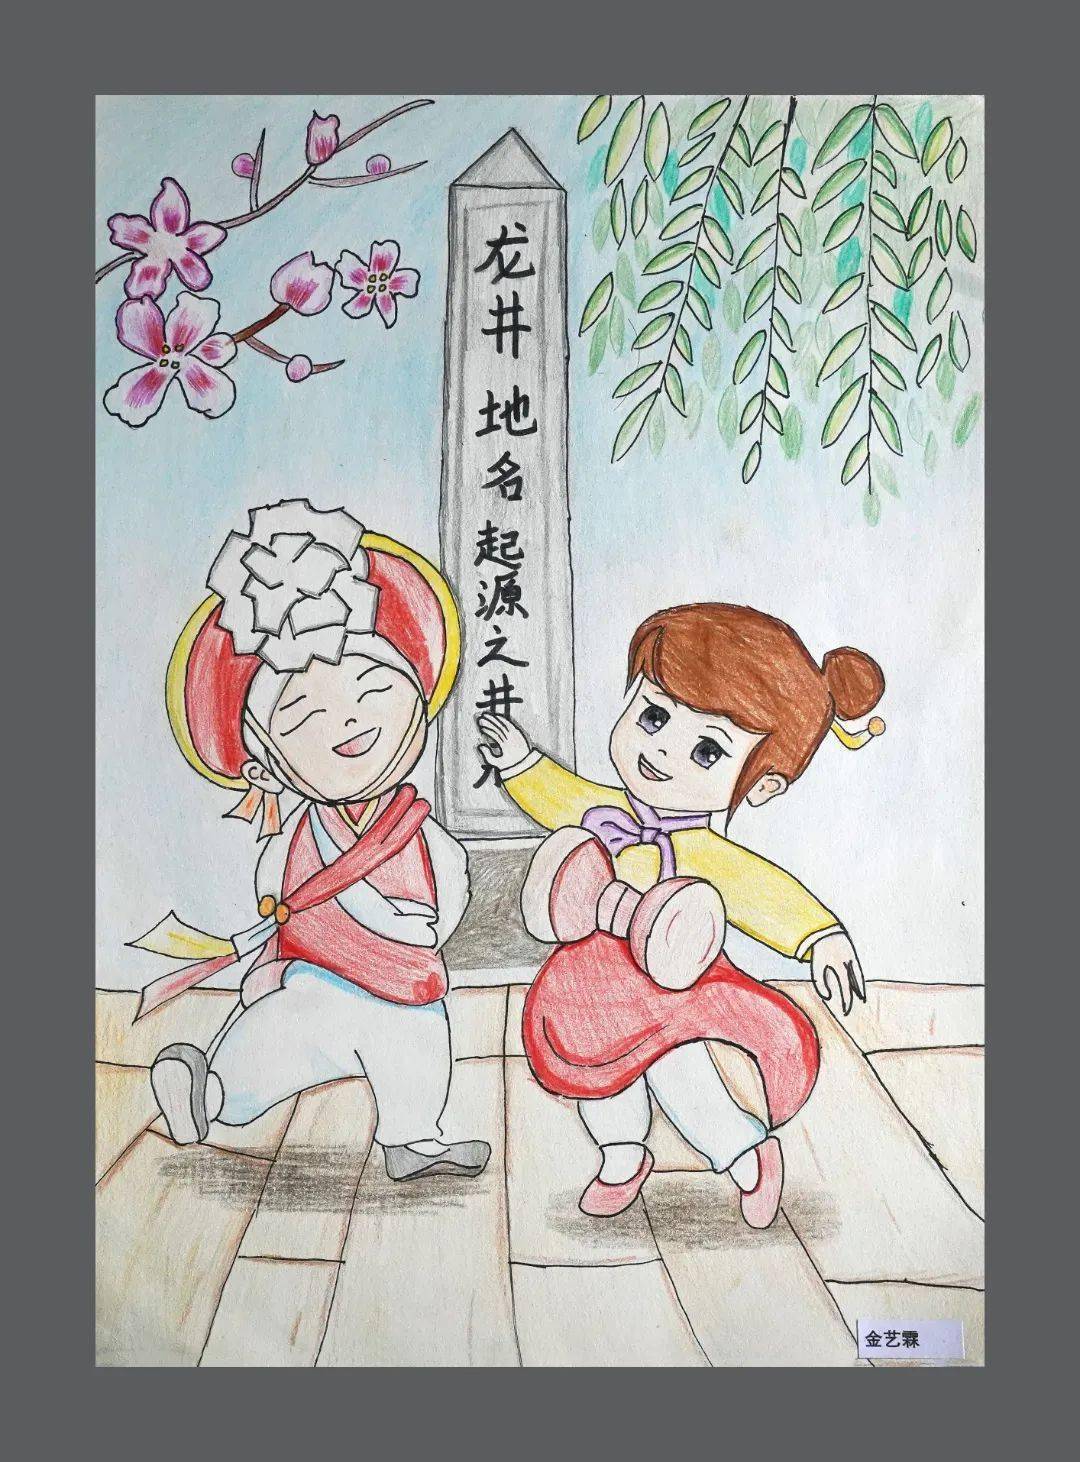 有朝鲜族特色的儿童画图片